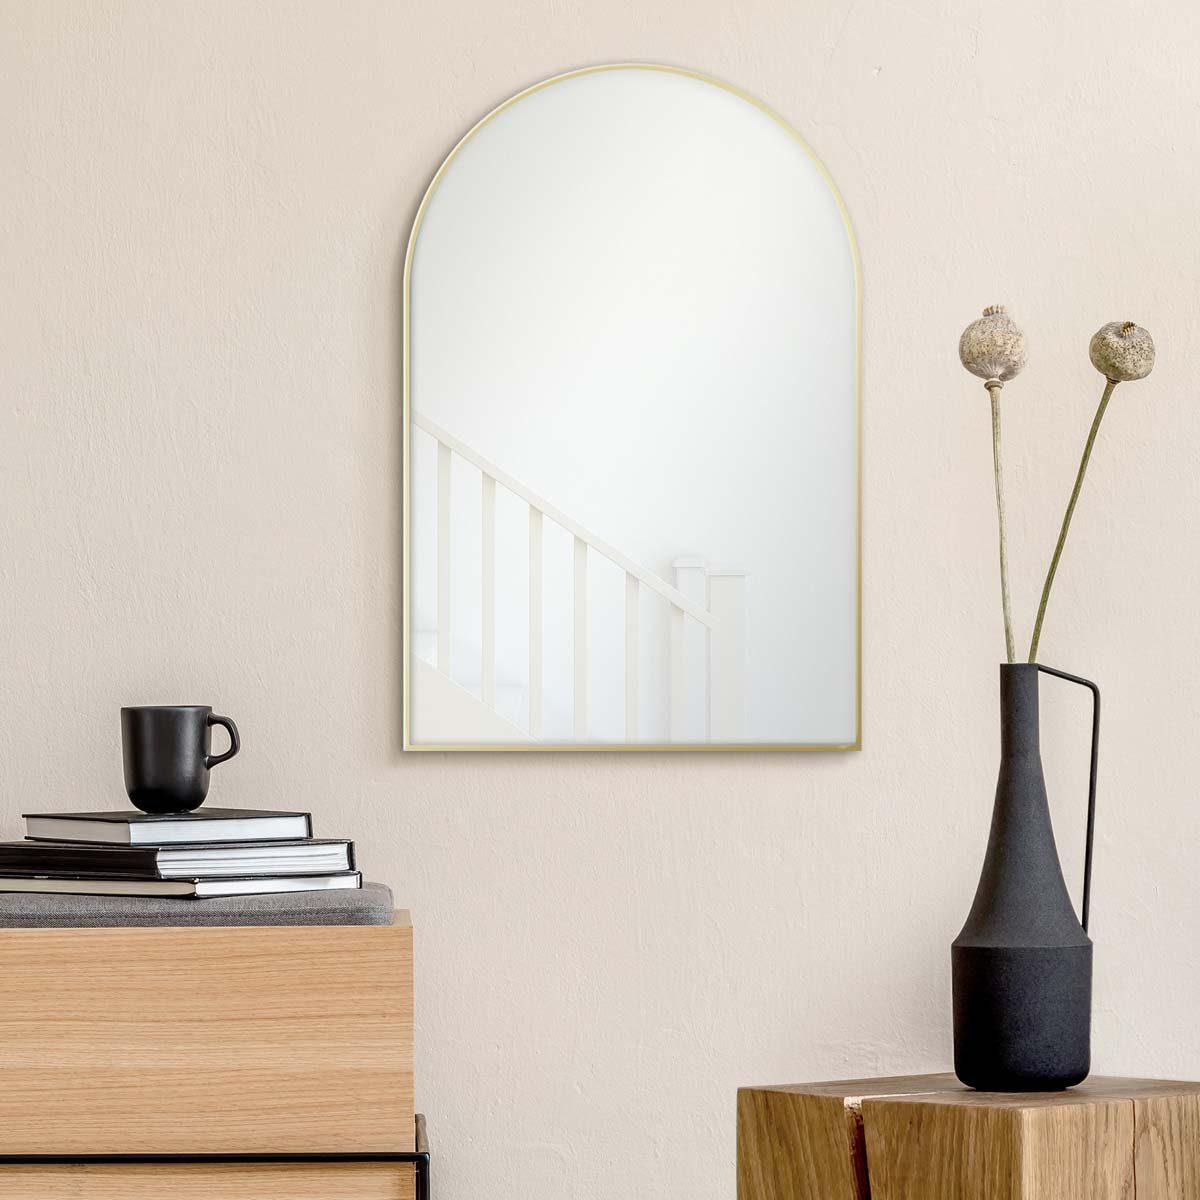 PHOTOLINI Spiegel mit Metallrahmen, Wandspiegel halbrund, schmaler Rahmen 50x75 cm Gold